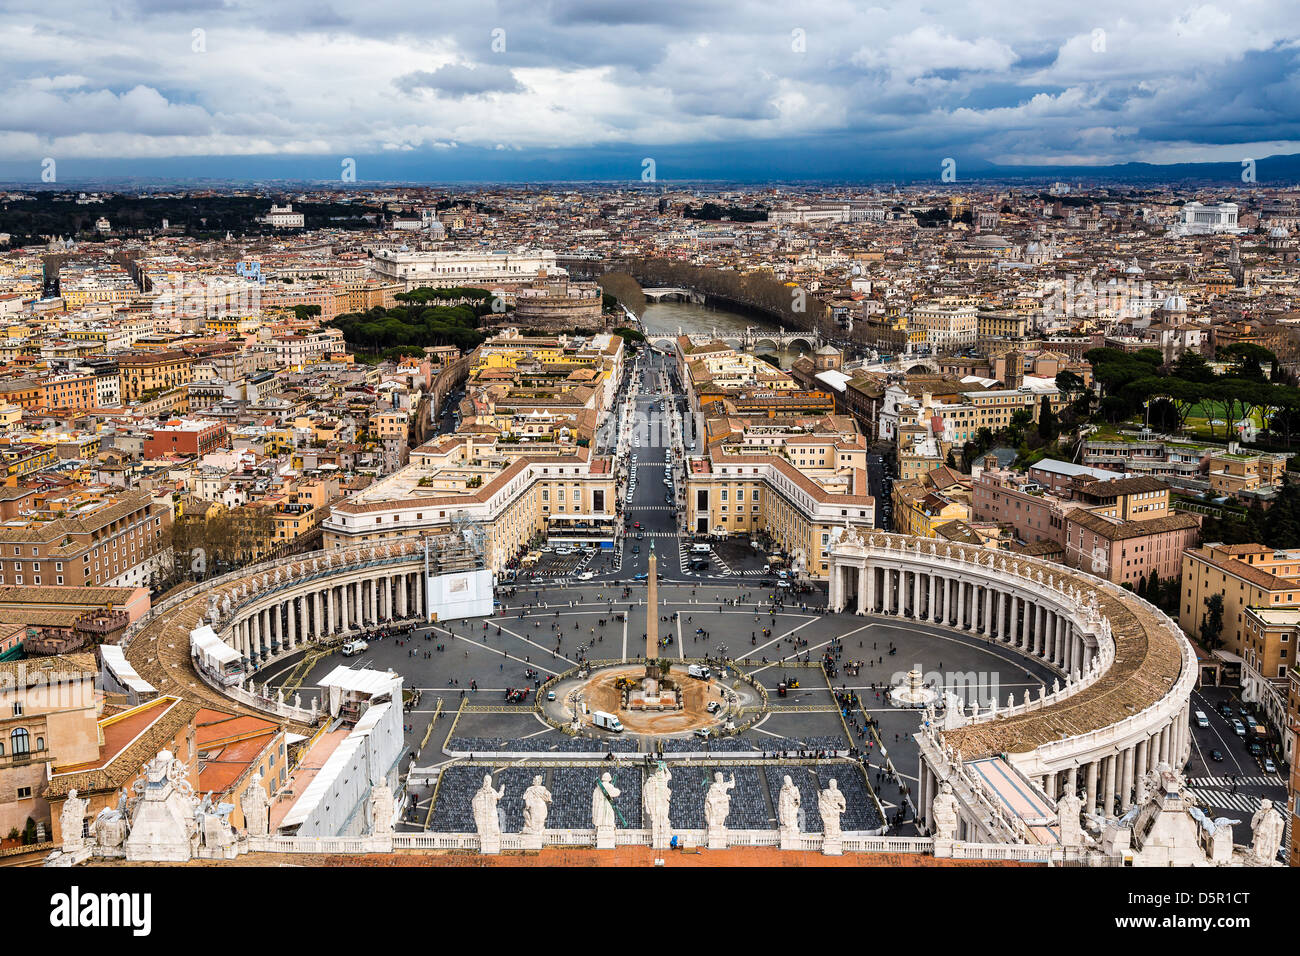 Vue de la Cité du Vatican et de Rome à partir de la coupole de la Basilique Saint Pierre Banque D'Images